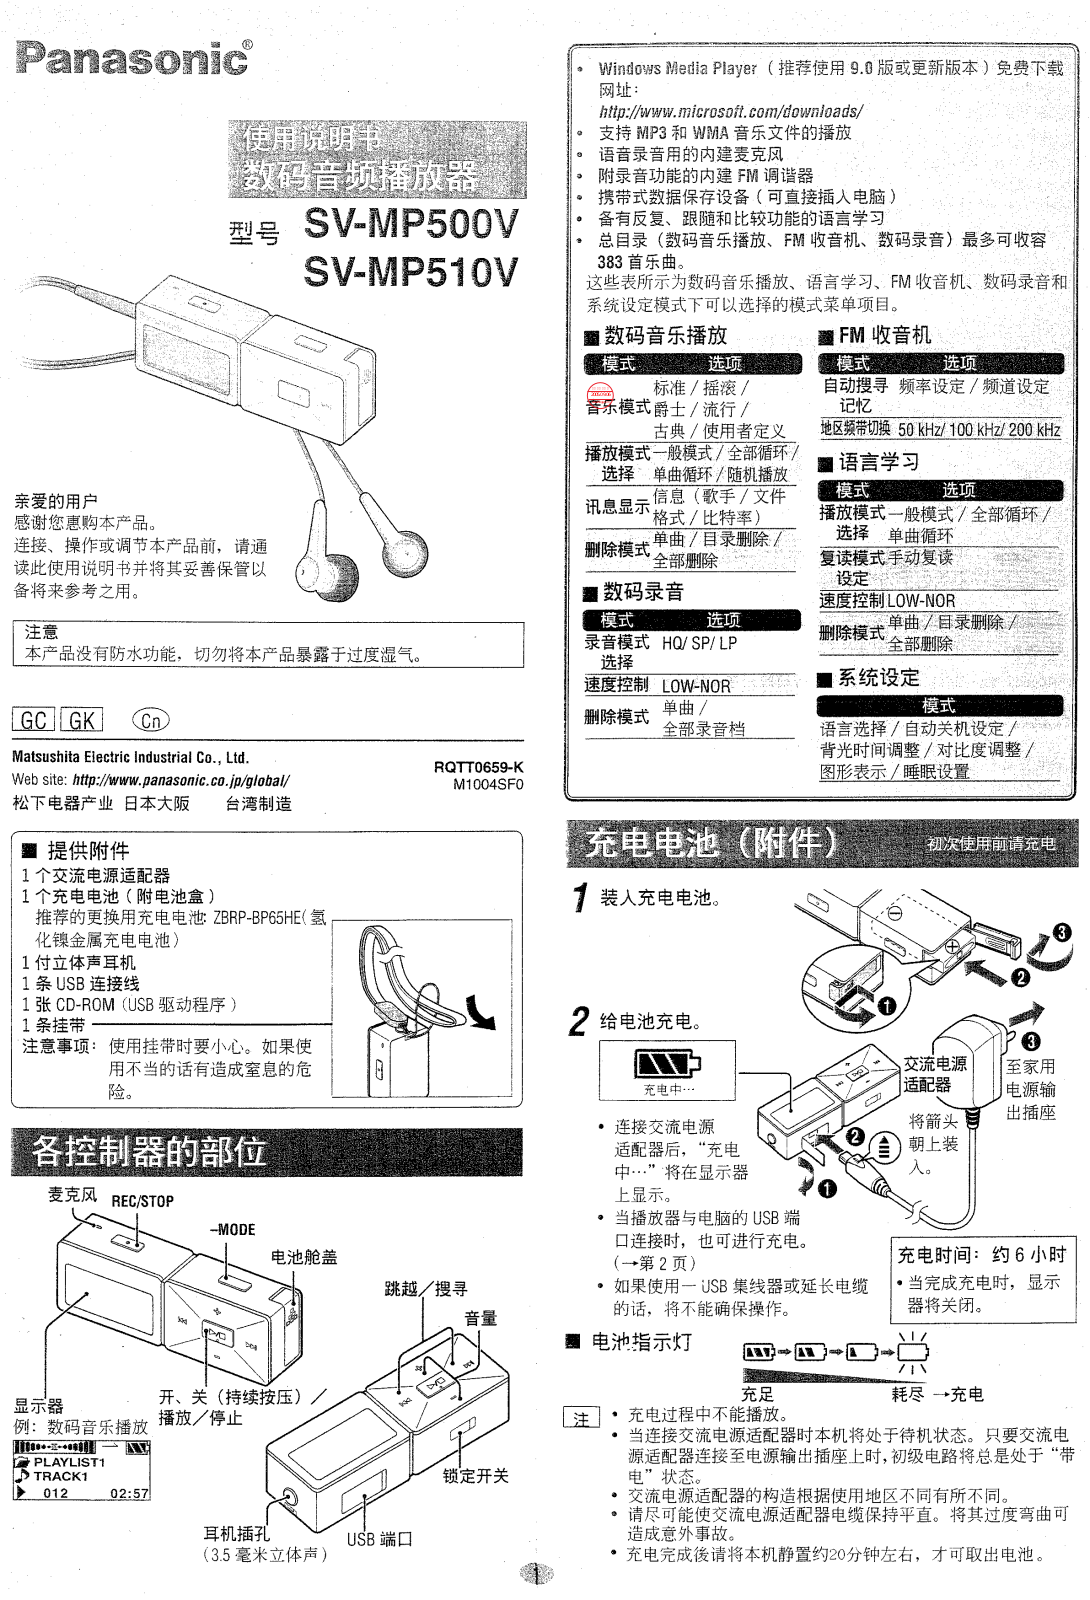 Panasonic SV-MP500V, SVMP510V User Manual